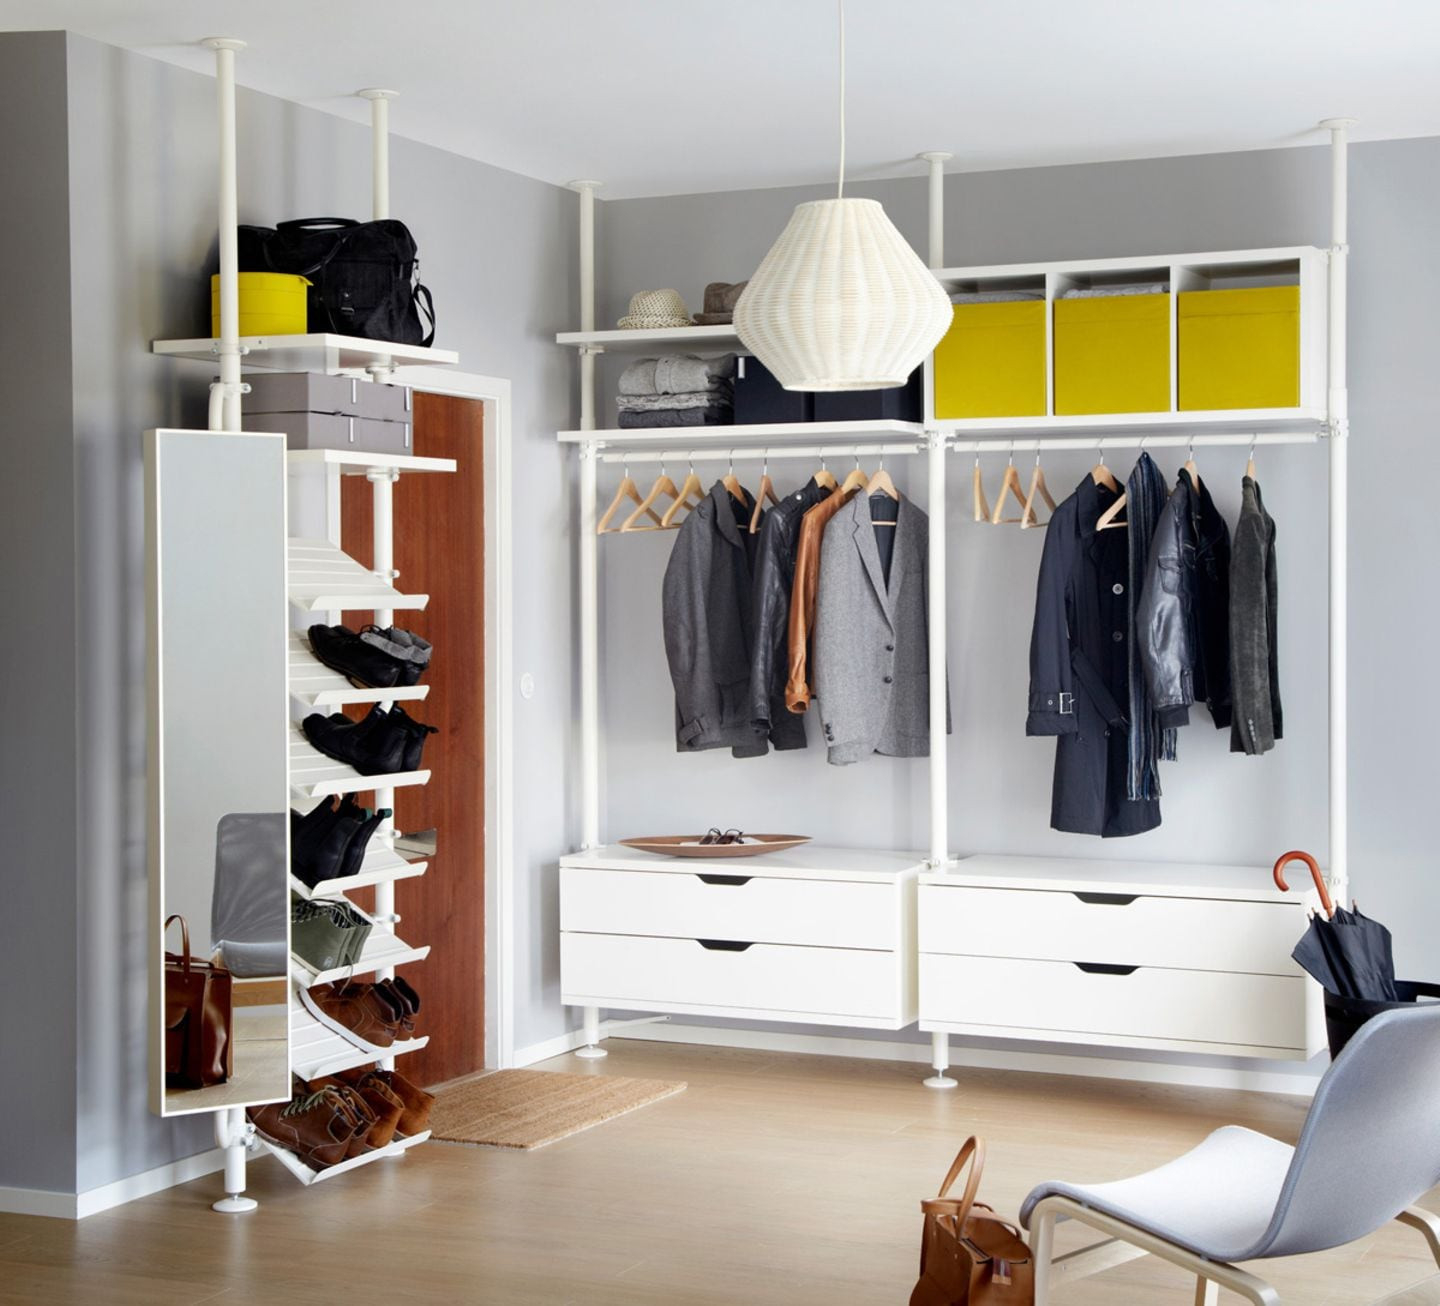 Begehbare Kleiderschränke – Systeme Für Offene Kleiderschränke for Ikea Offener Kleiderschrank